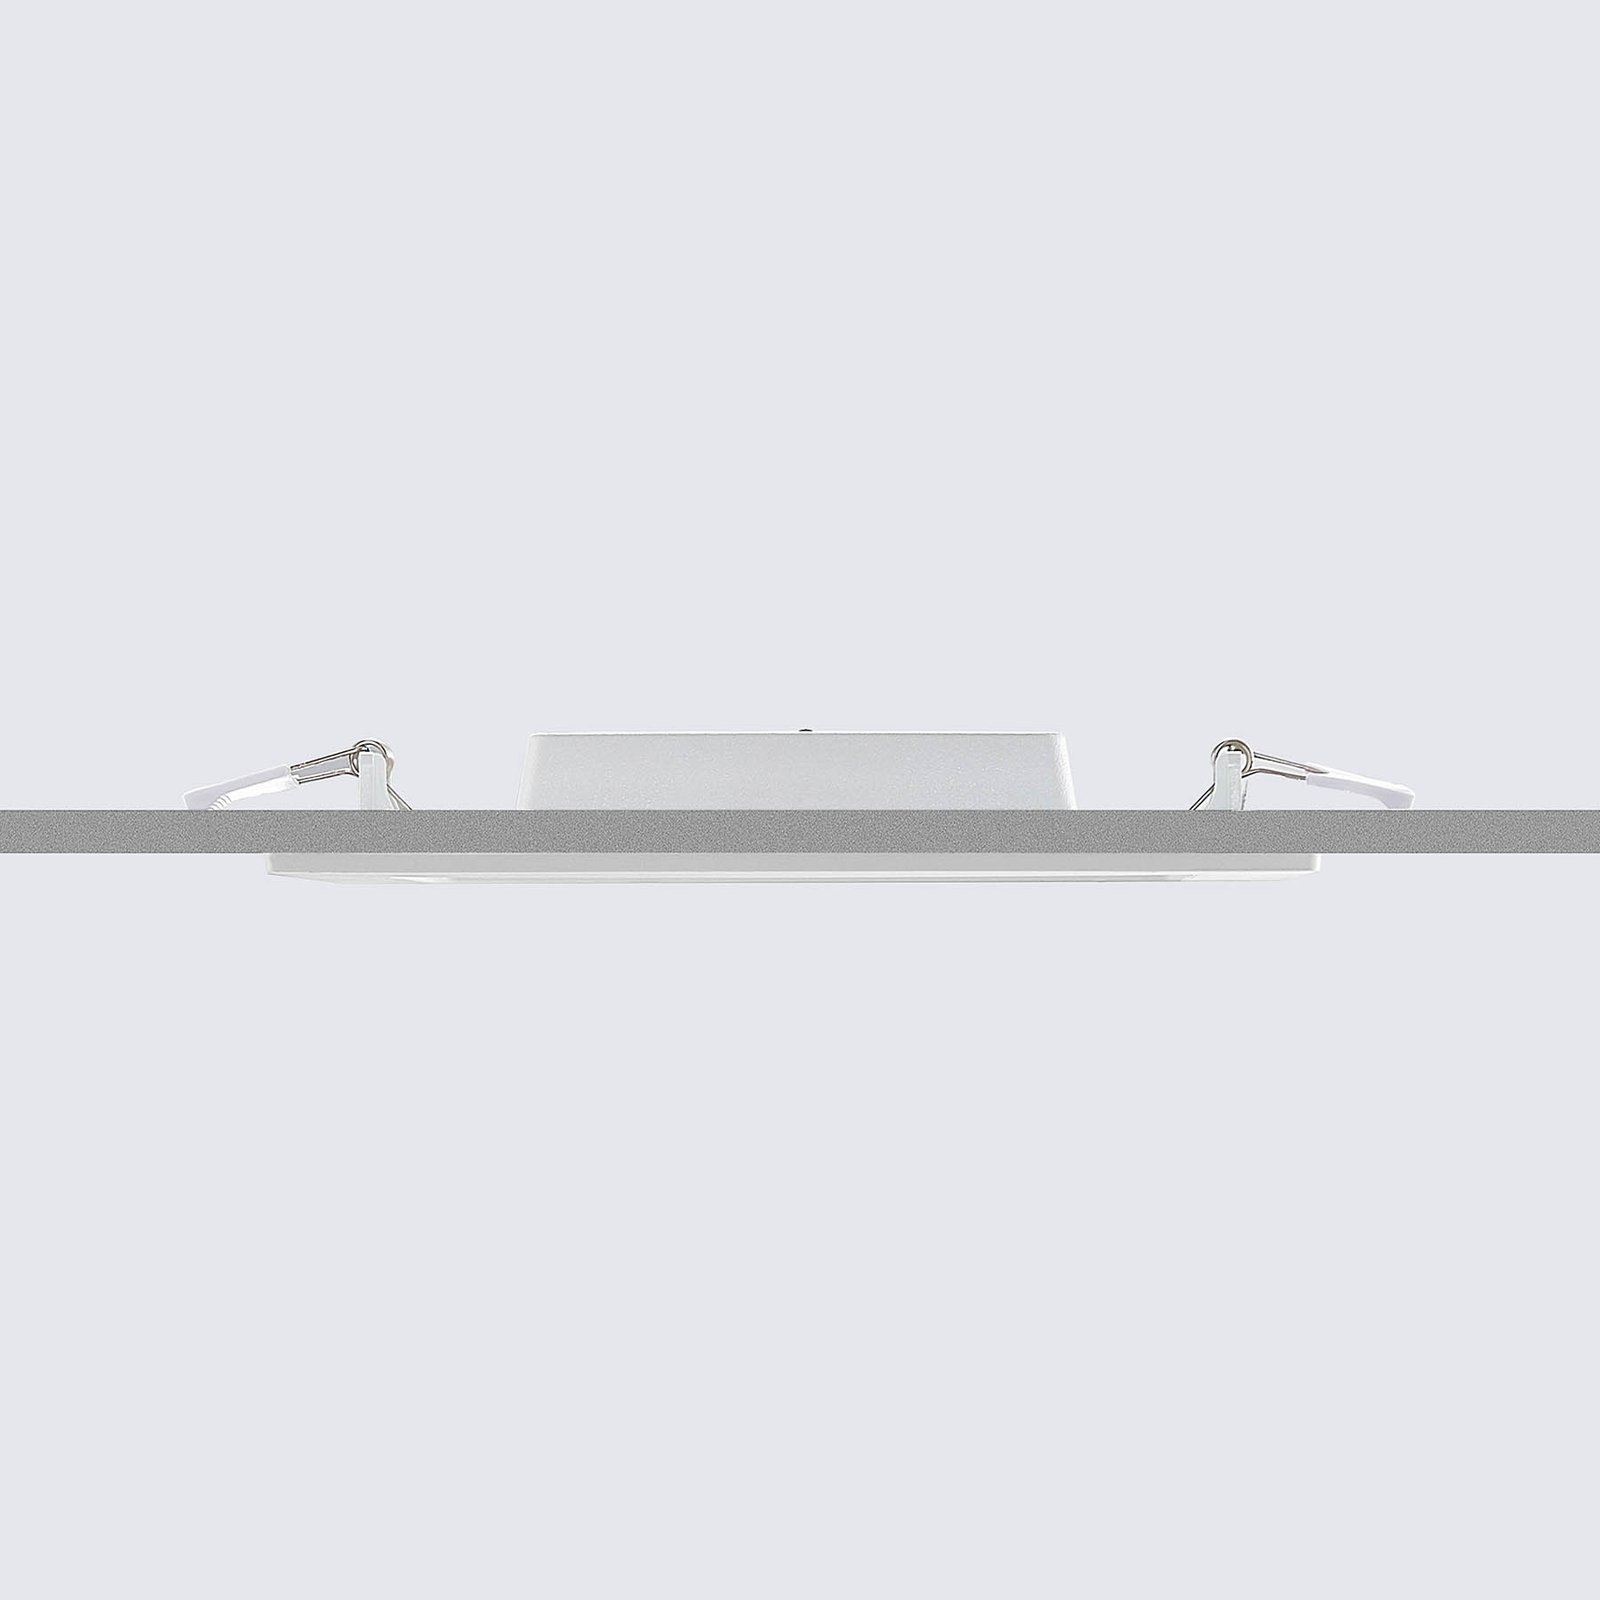 Prios Helina zapustené LED, biele, 22 cm, 18 W